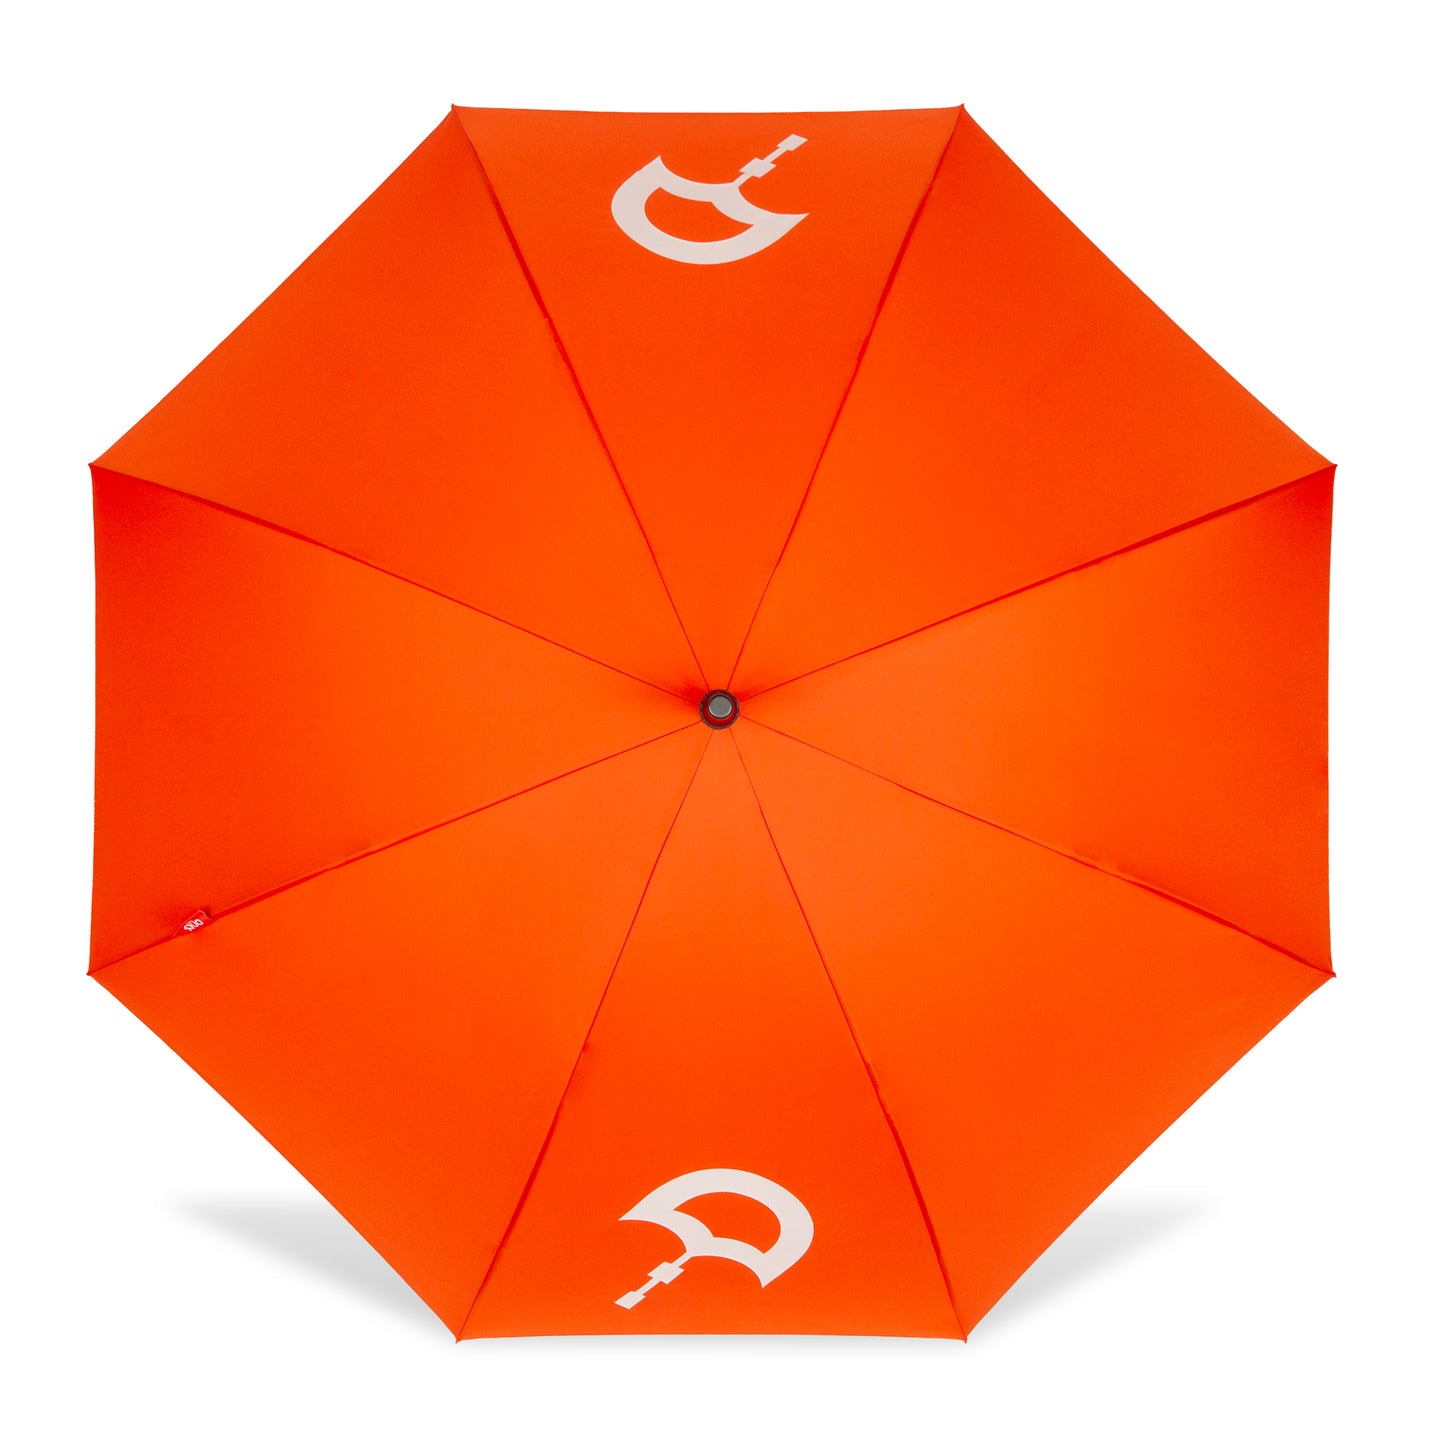 The Duo Umbrella